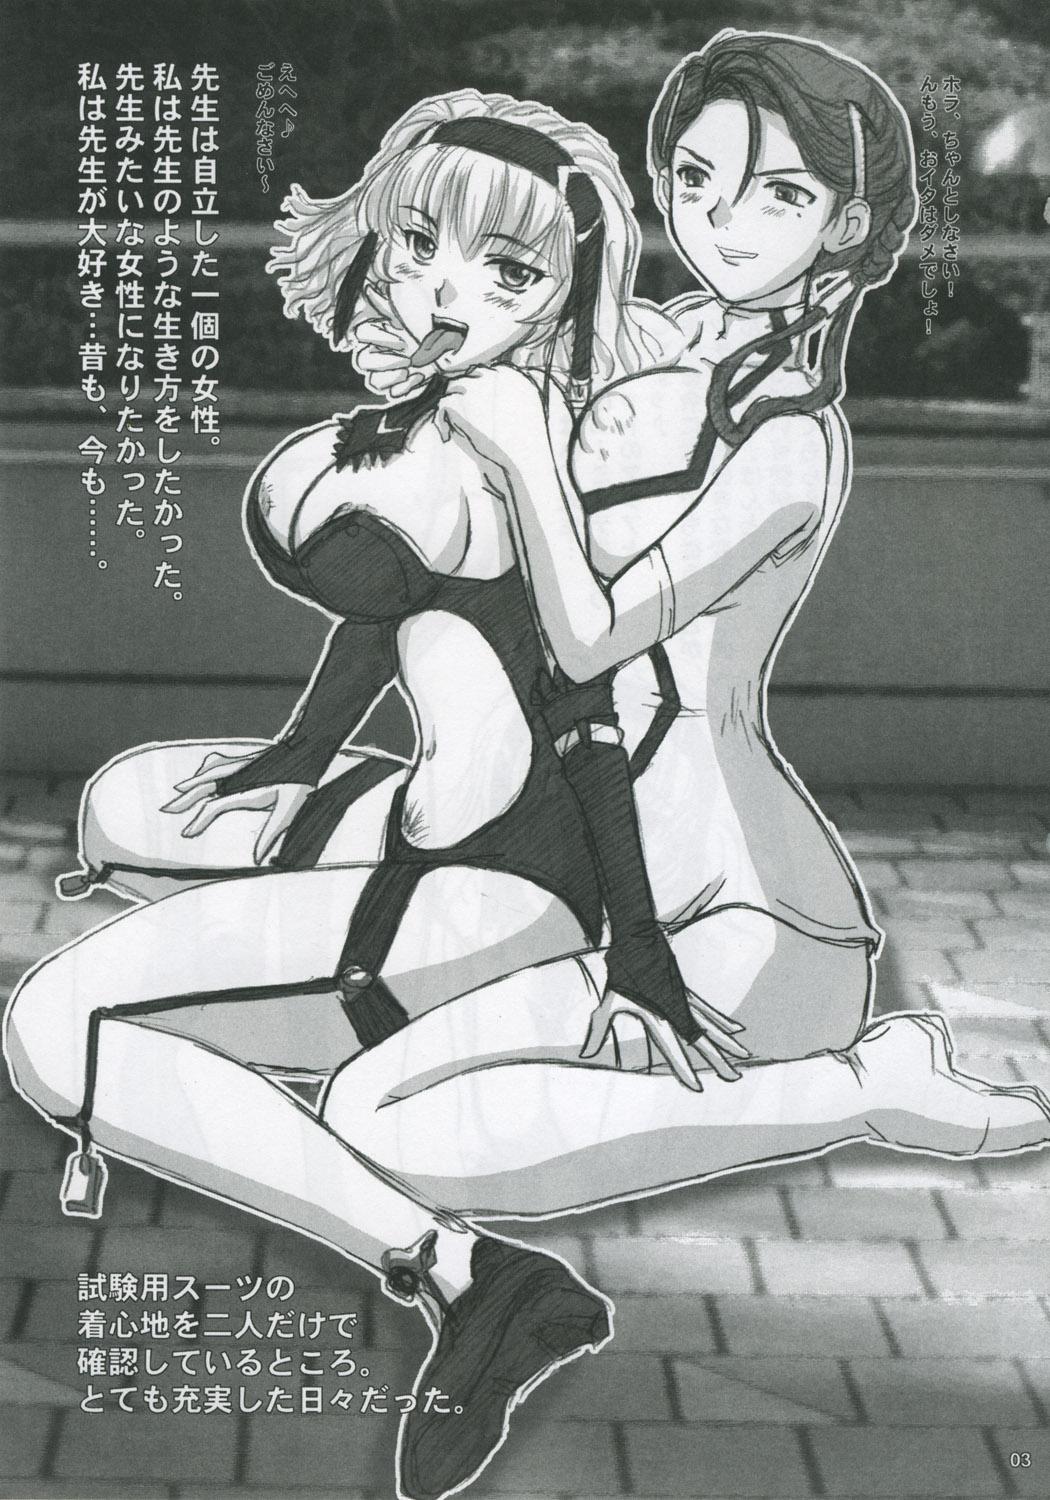 Anime Iyashi no Megami e Sukui no Uta wo - Super robot wars Gear fighter dendoh Fat Ass - Page 2